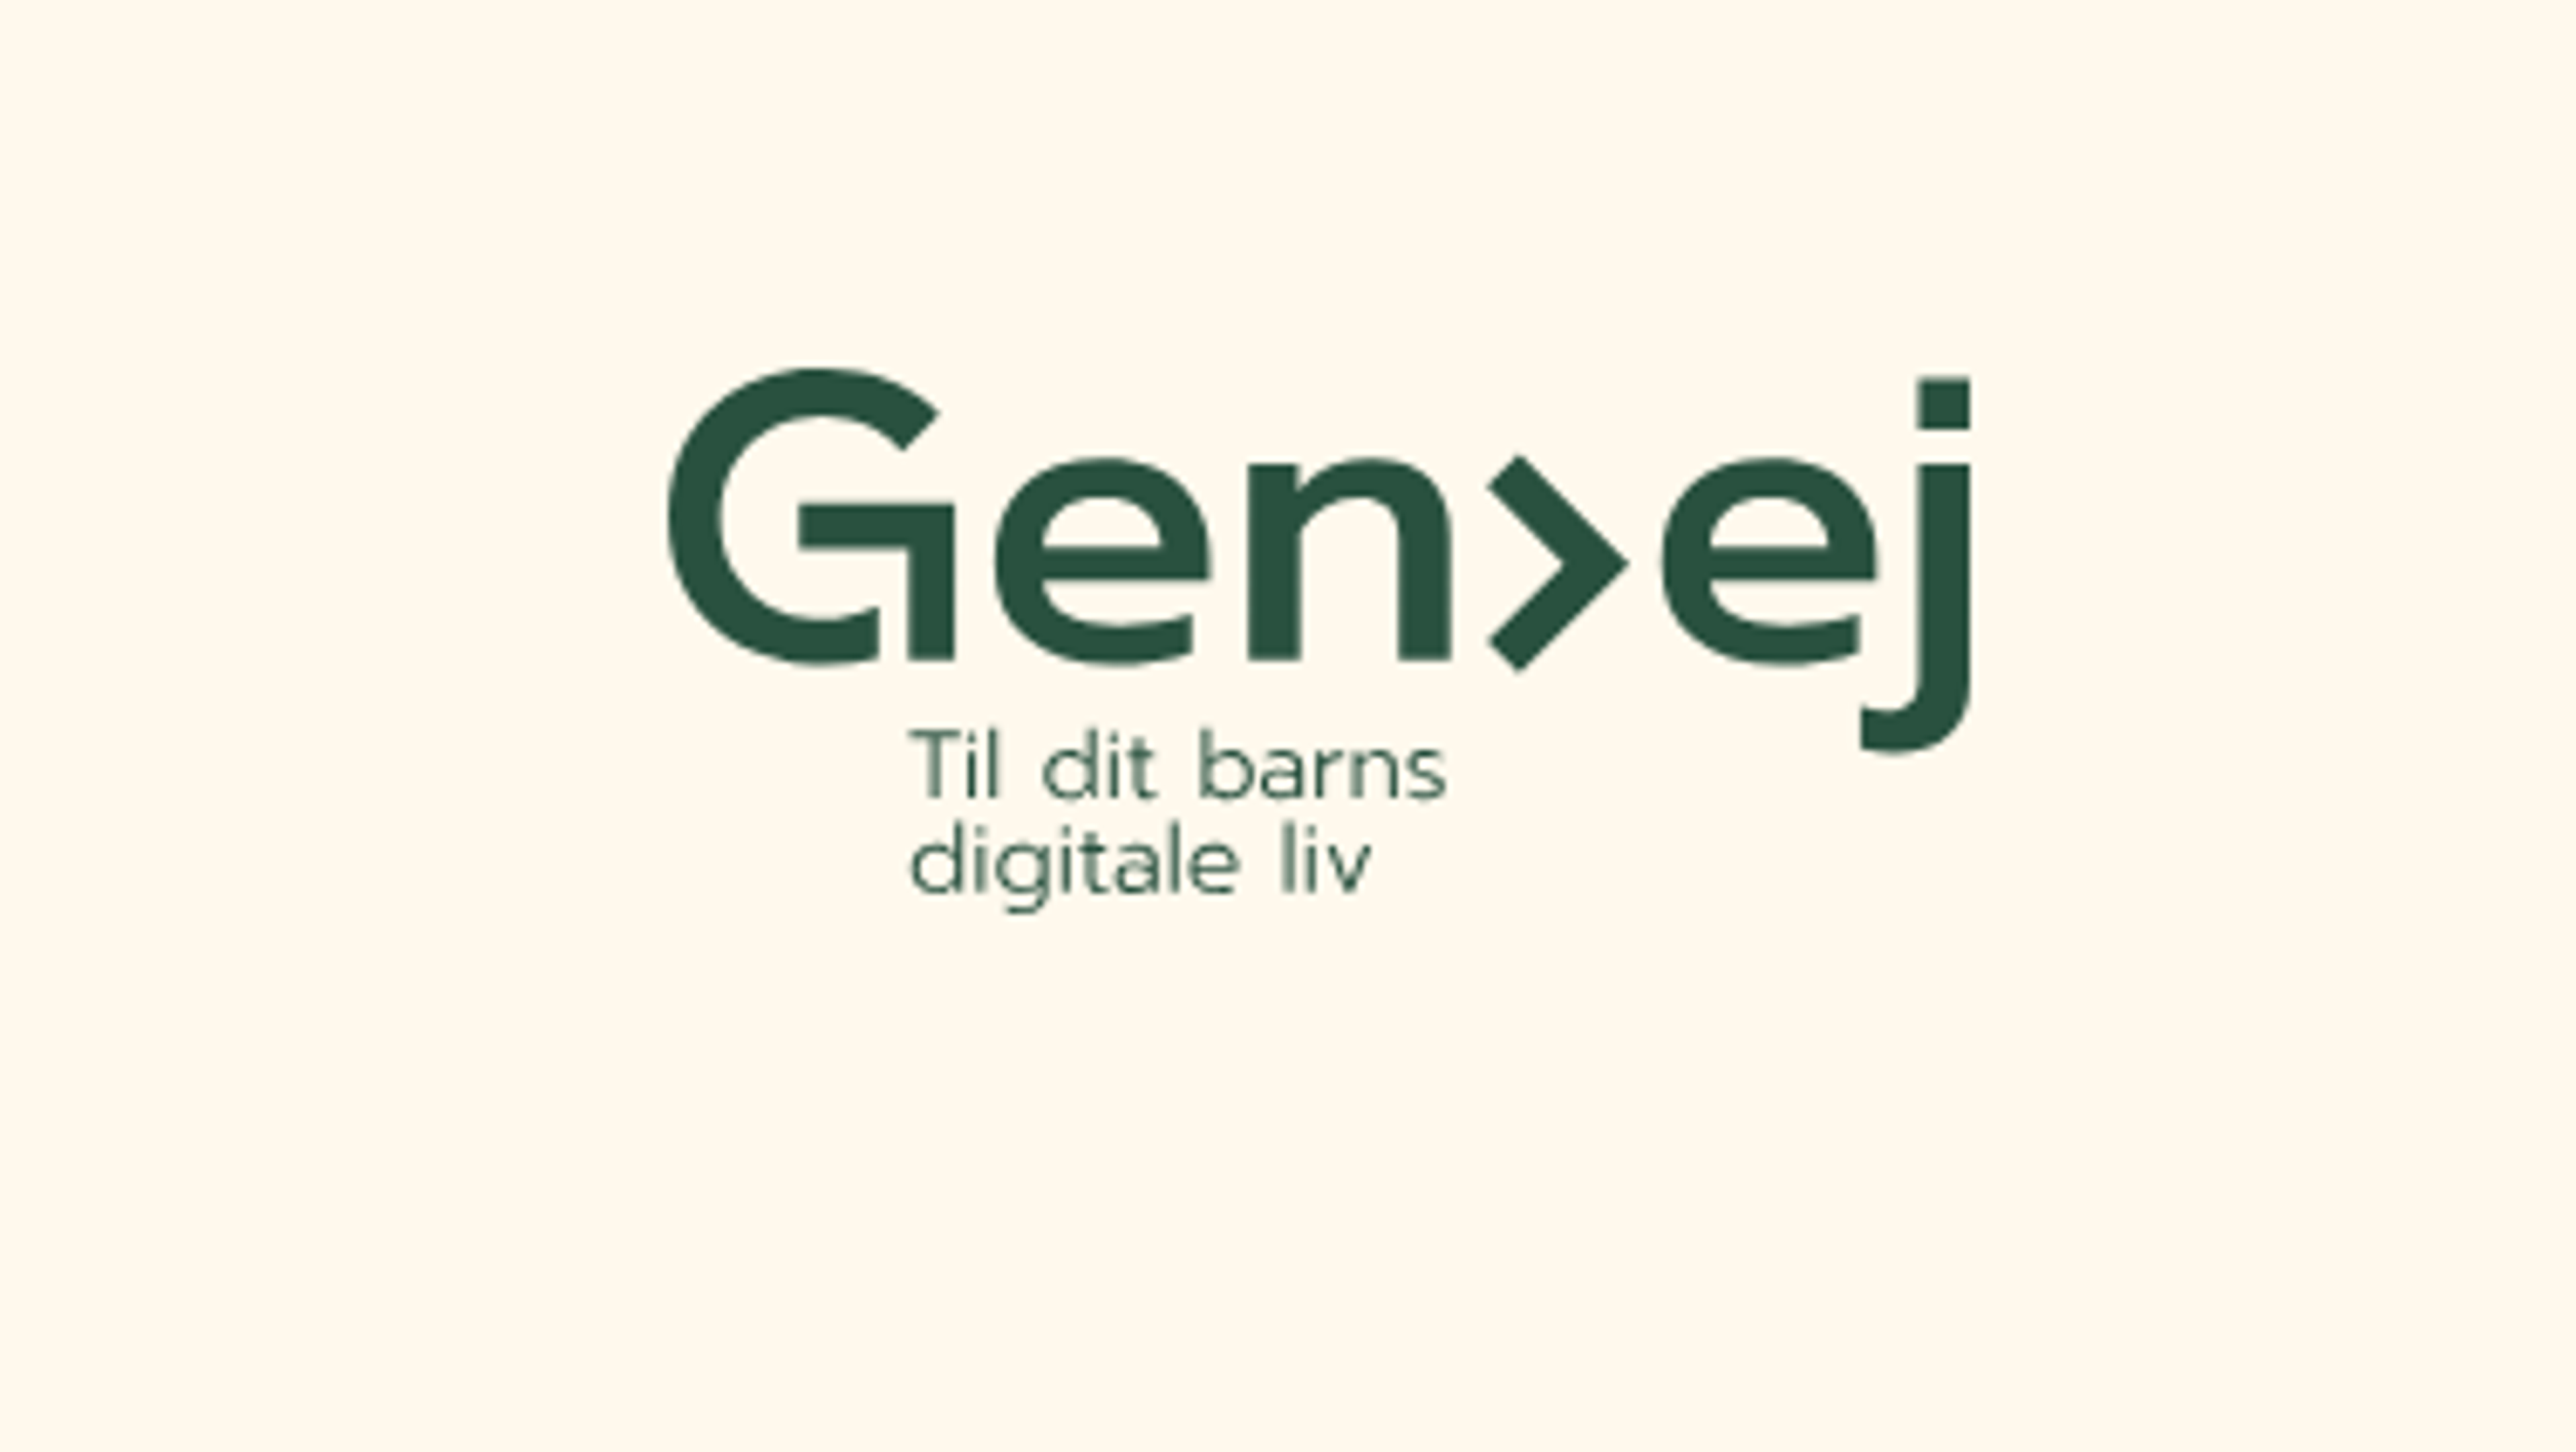 På billedet ses logoet til hjemmesiden Genvej.
Under Genvejs logo står der 'Til dit barns digitale liv'.